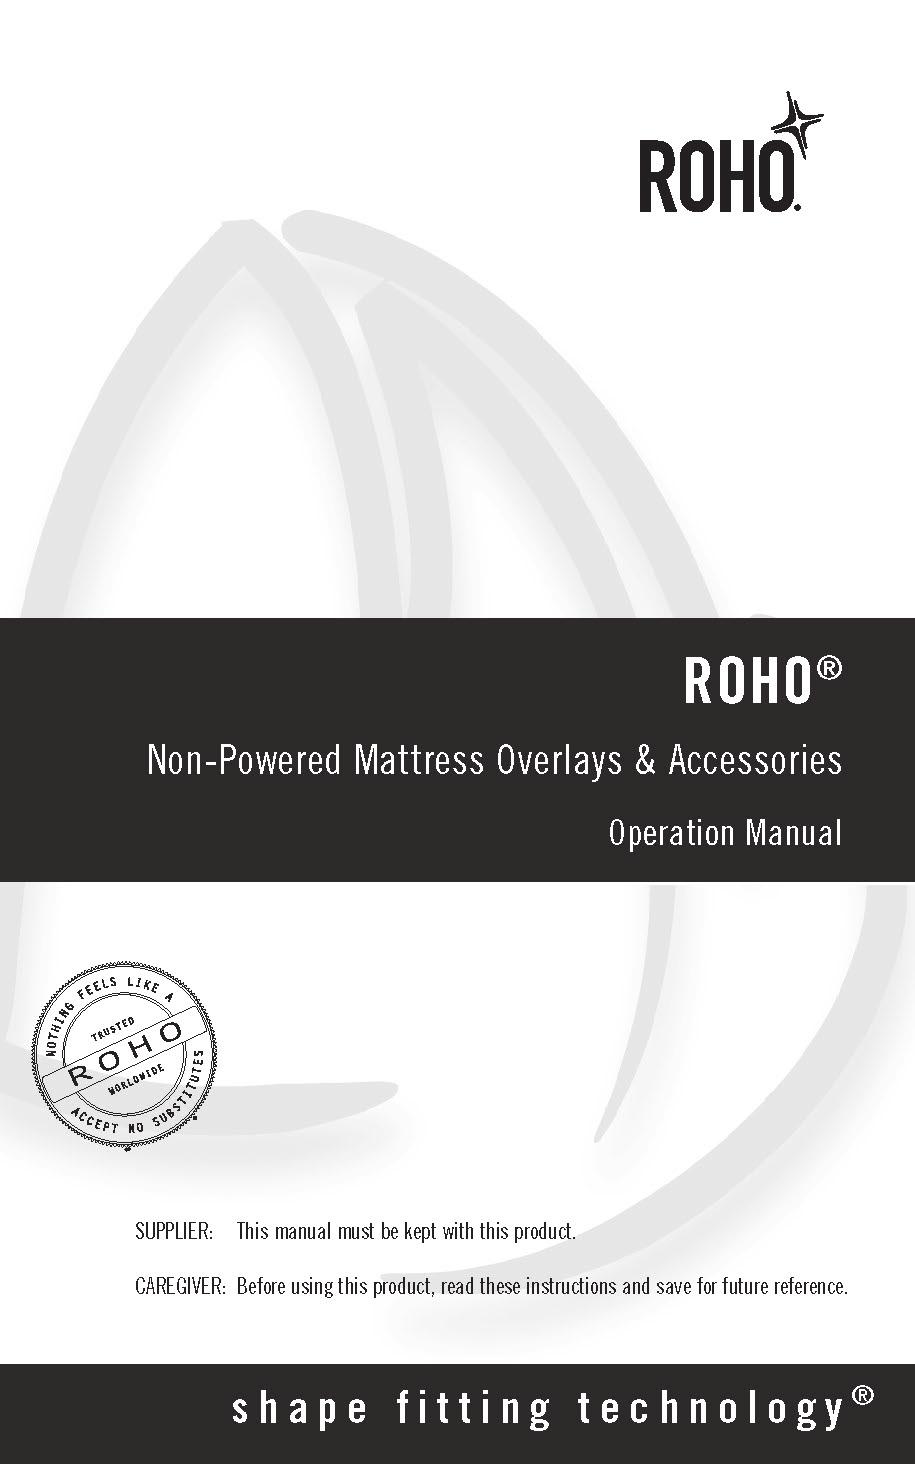 ROHO overmadrasstrekket () og overtrekket er laget av to-veis elastisk, fuktresistent stoff med